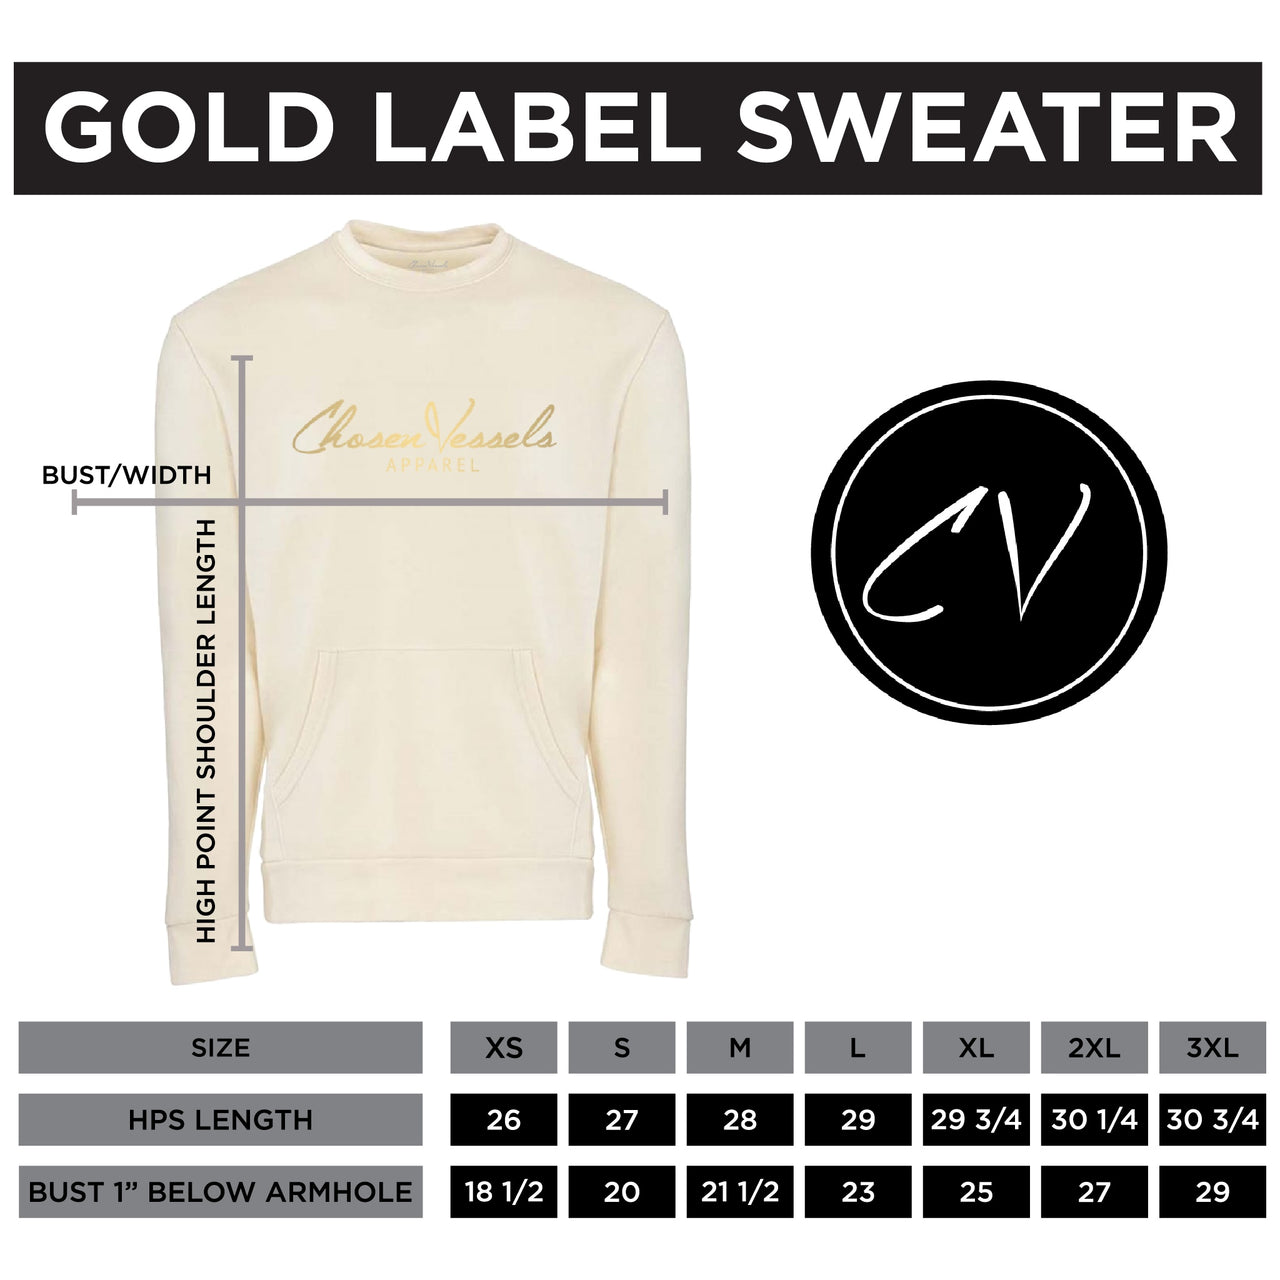 Signature Gold Label Sweater